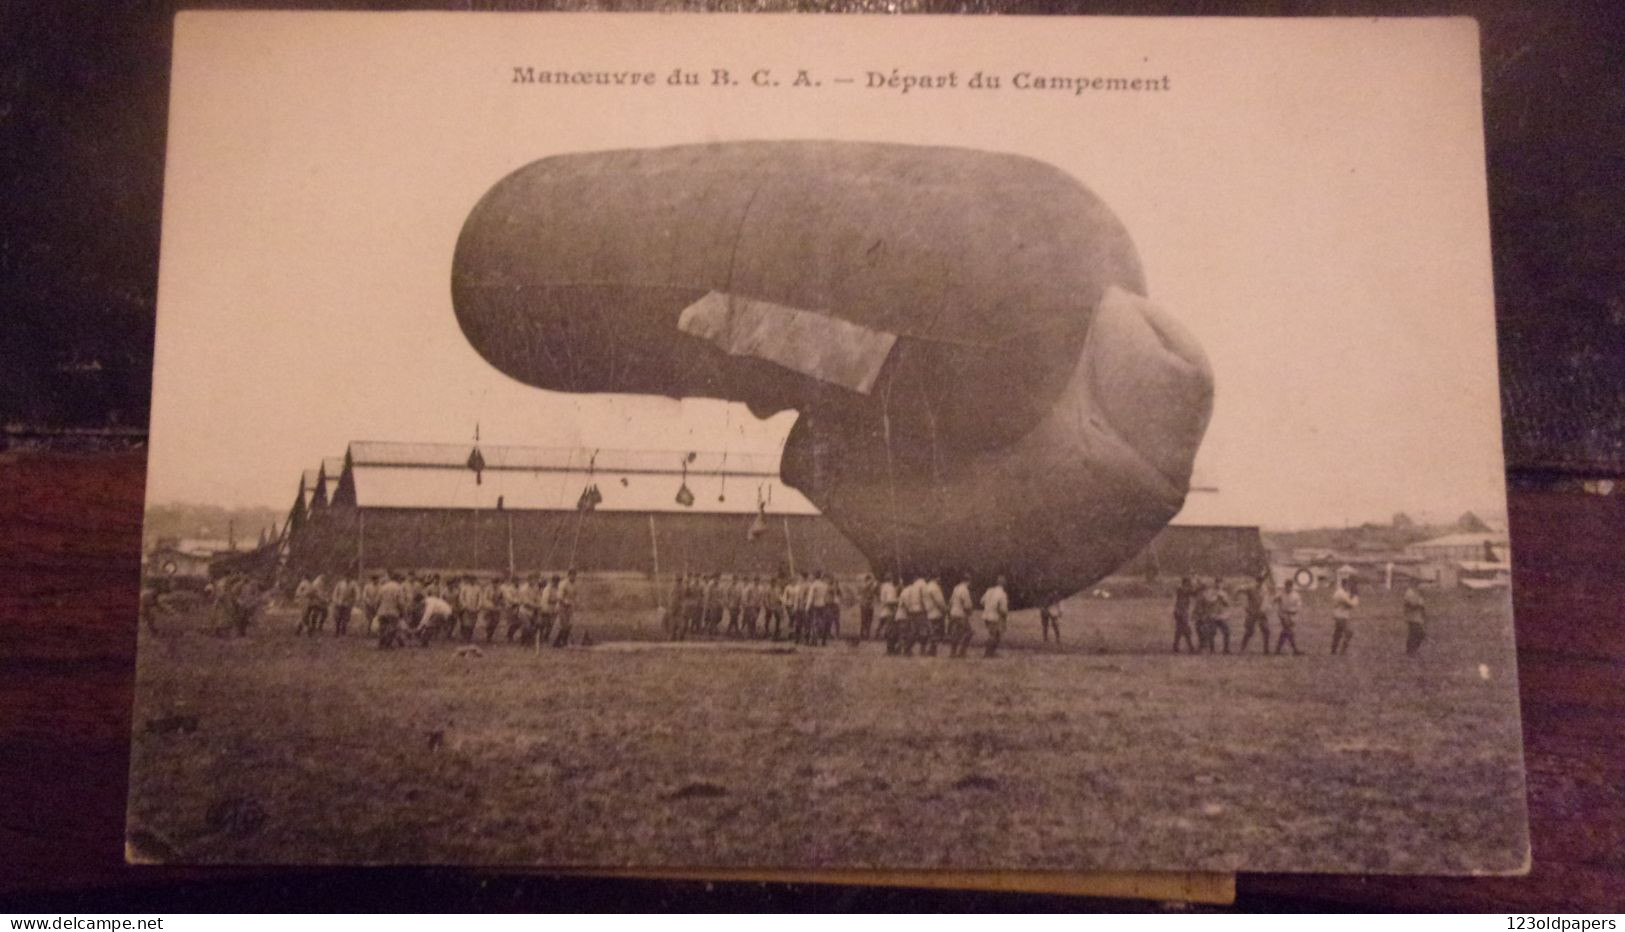 DIRIGEABLE ZEPPELIN - Zeppeline